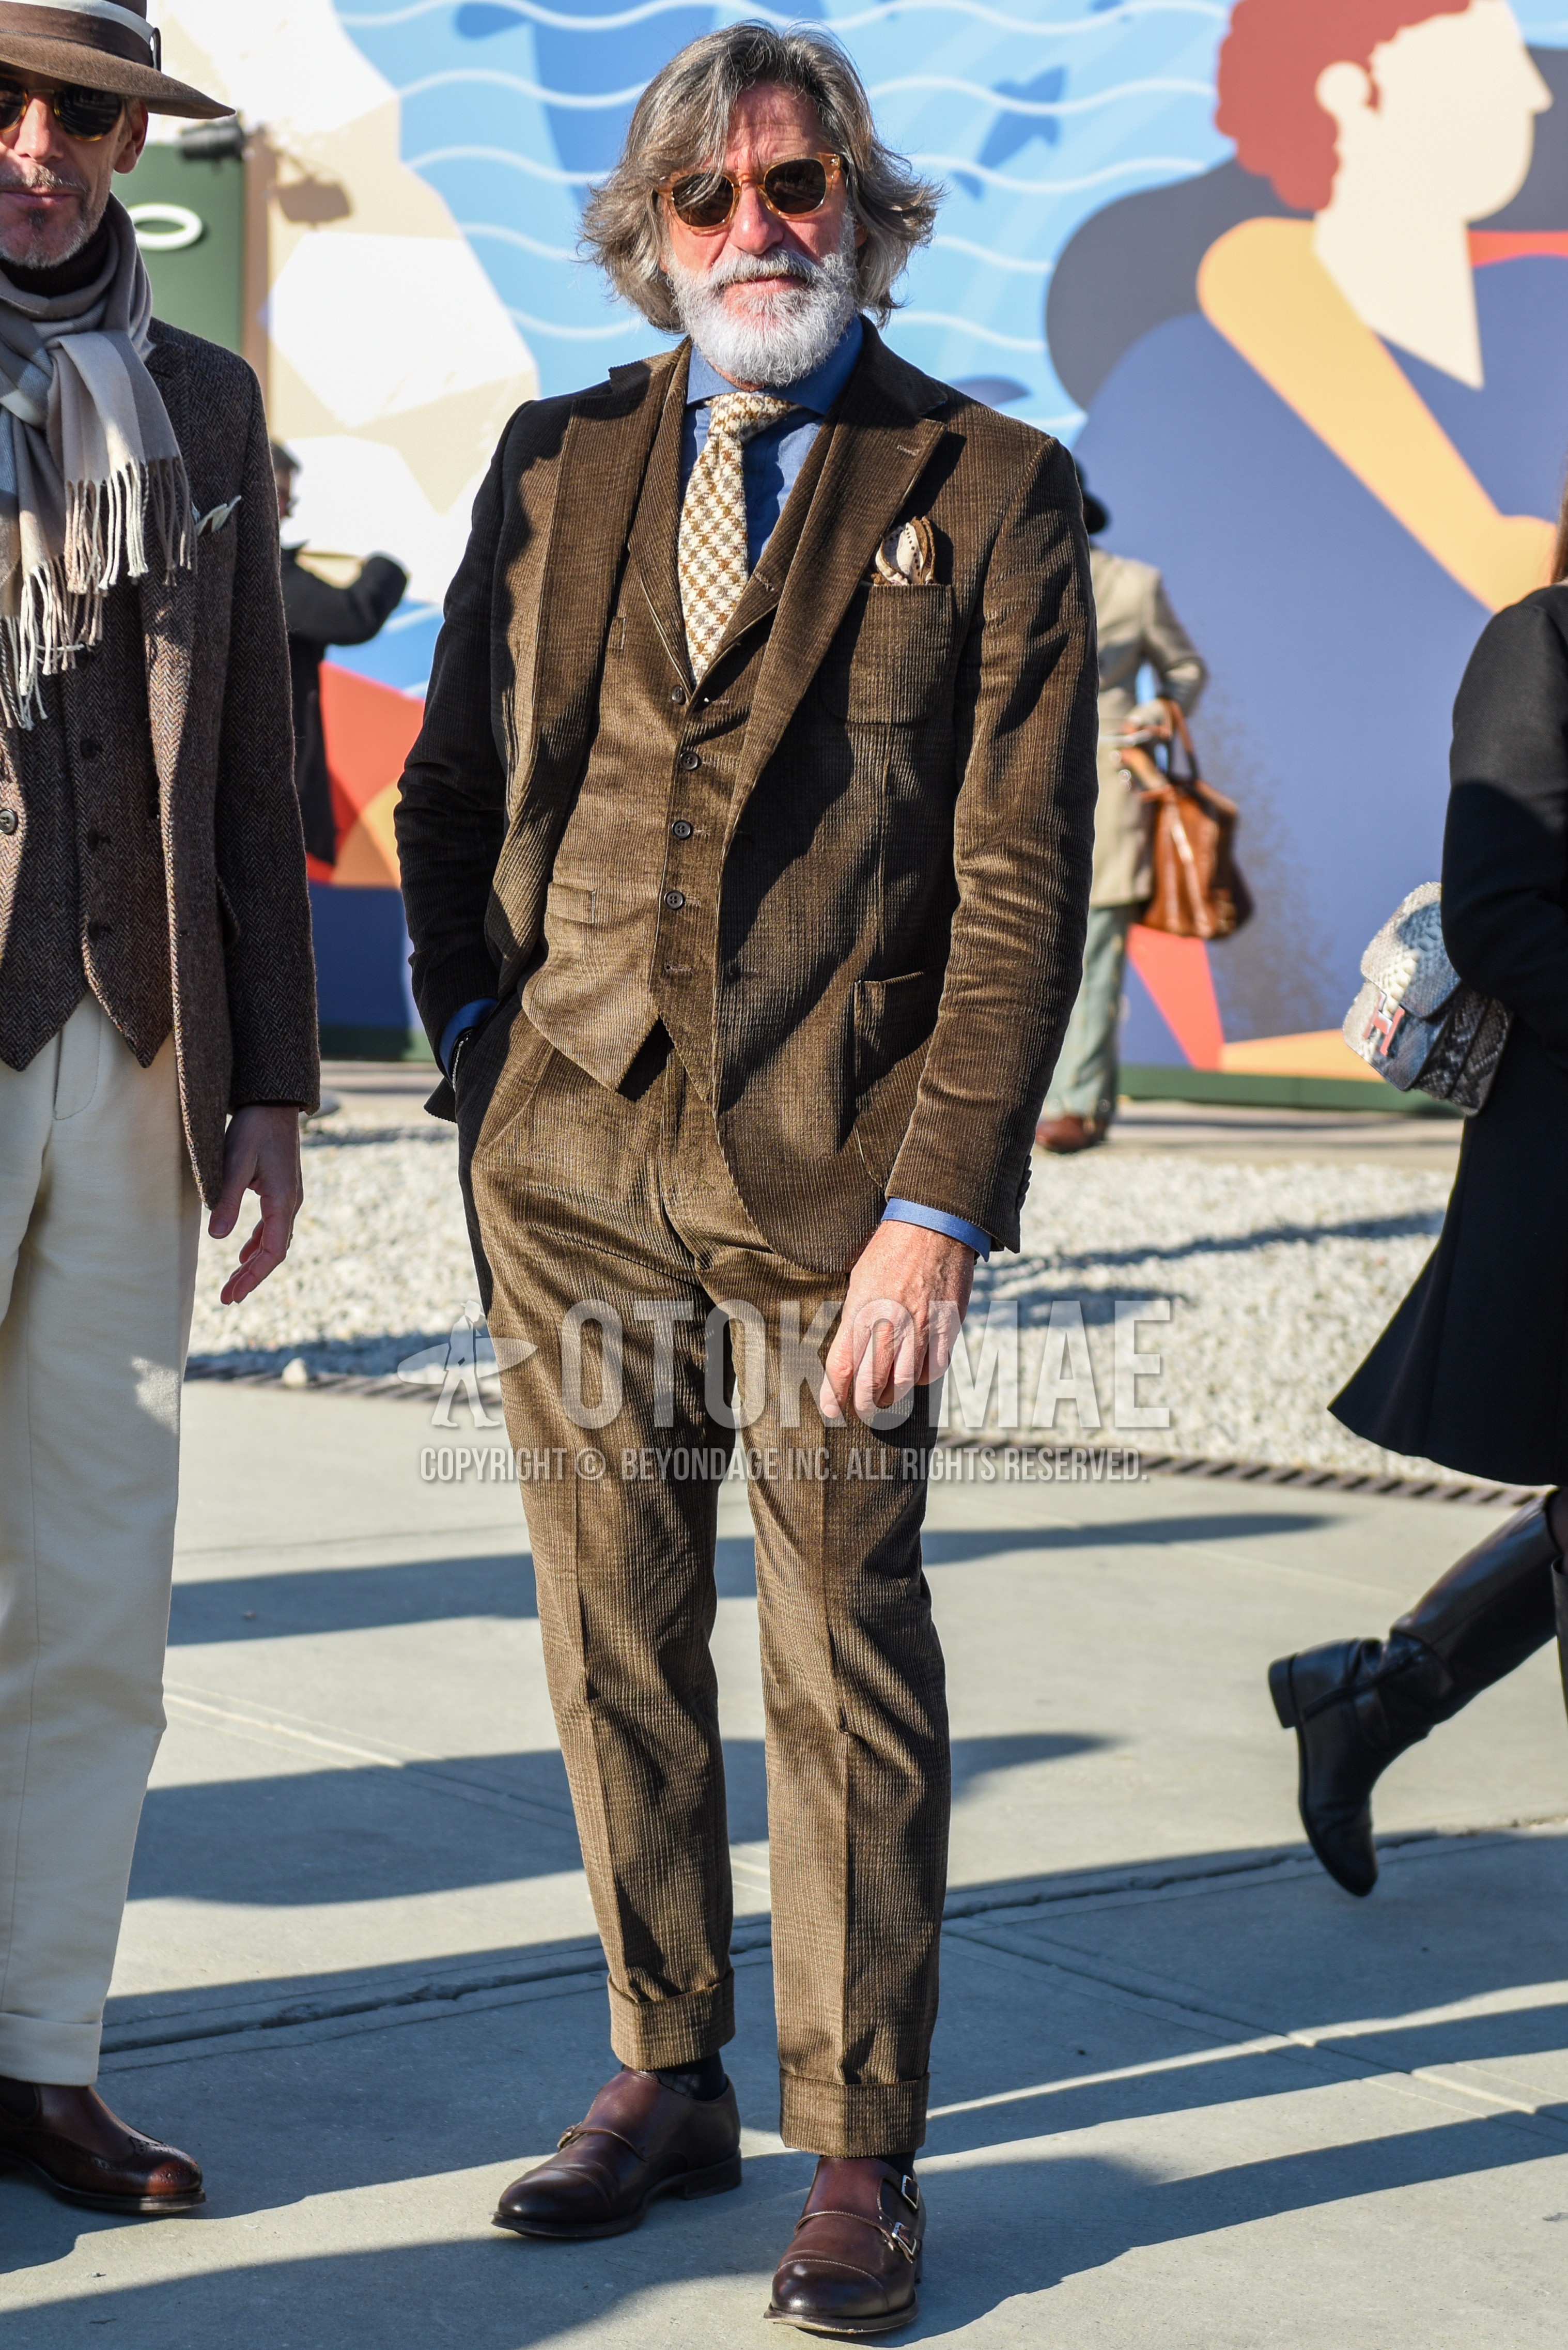 Men's spring autumn outfit with beige plain sunglasses, gray plain shirt, gray plain socks, brown monk shoes leather shoes, brown check three-piece suit, beige necktie necktie.